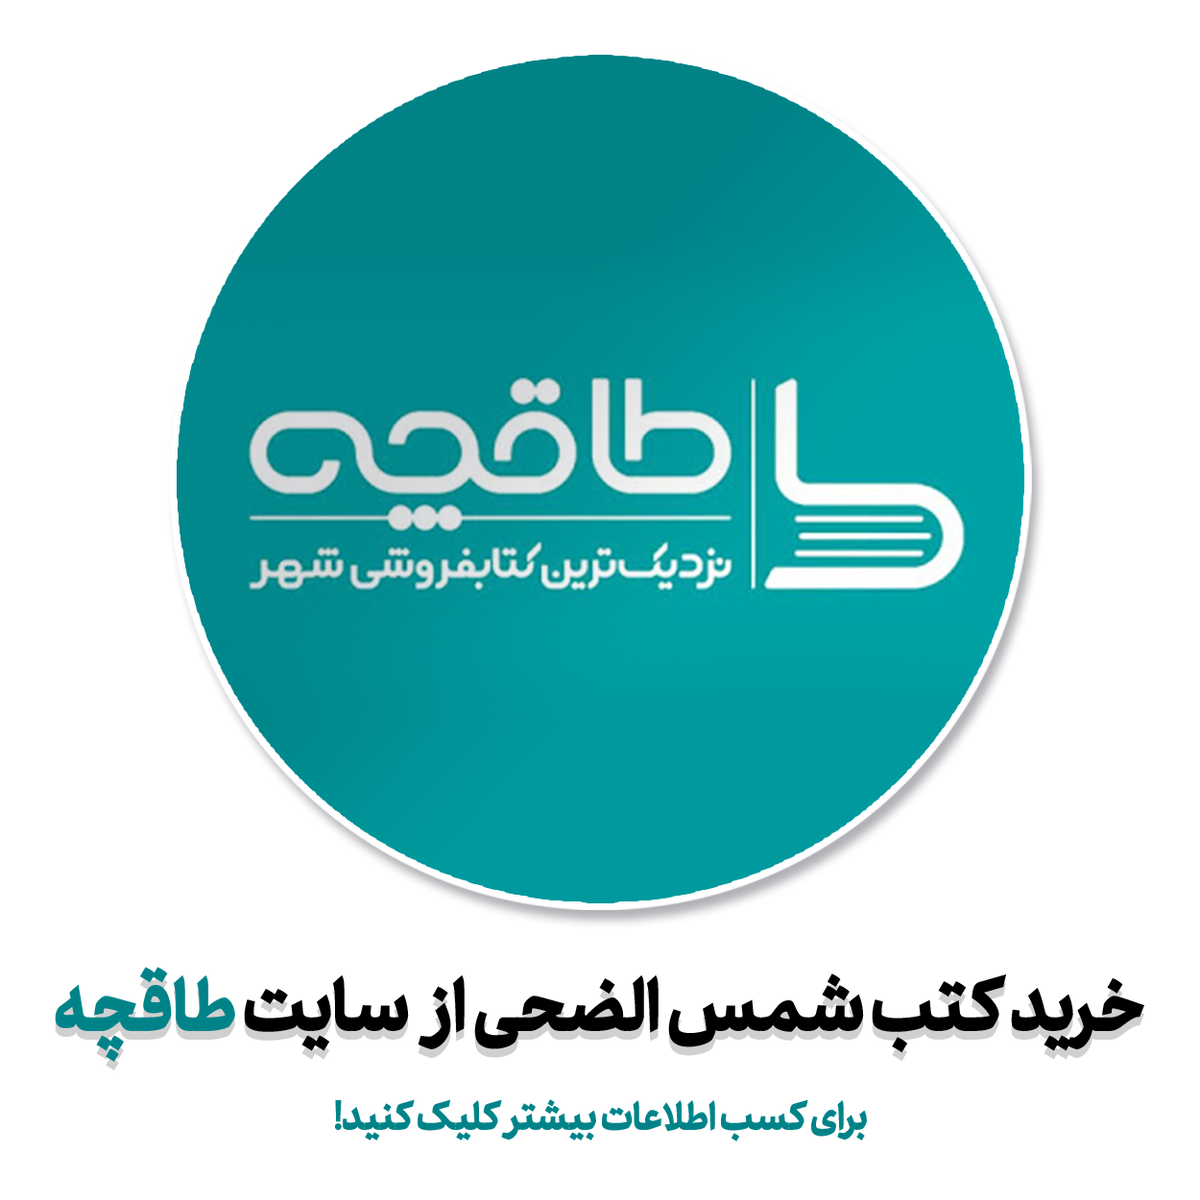 خرید کتاب های الکترونیکی شمس الهدی از سایت طاقچه